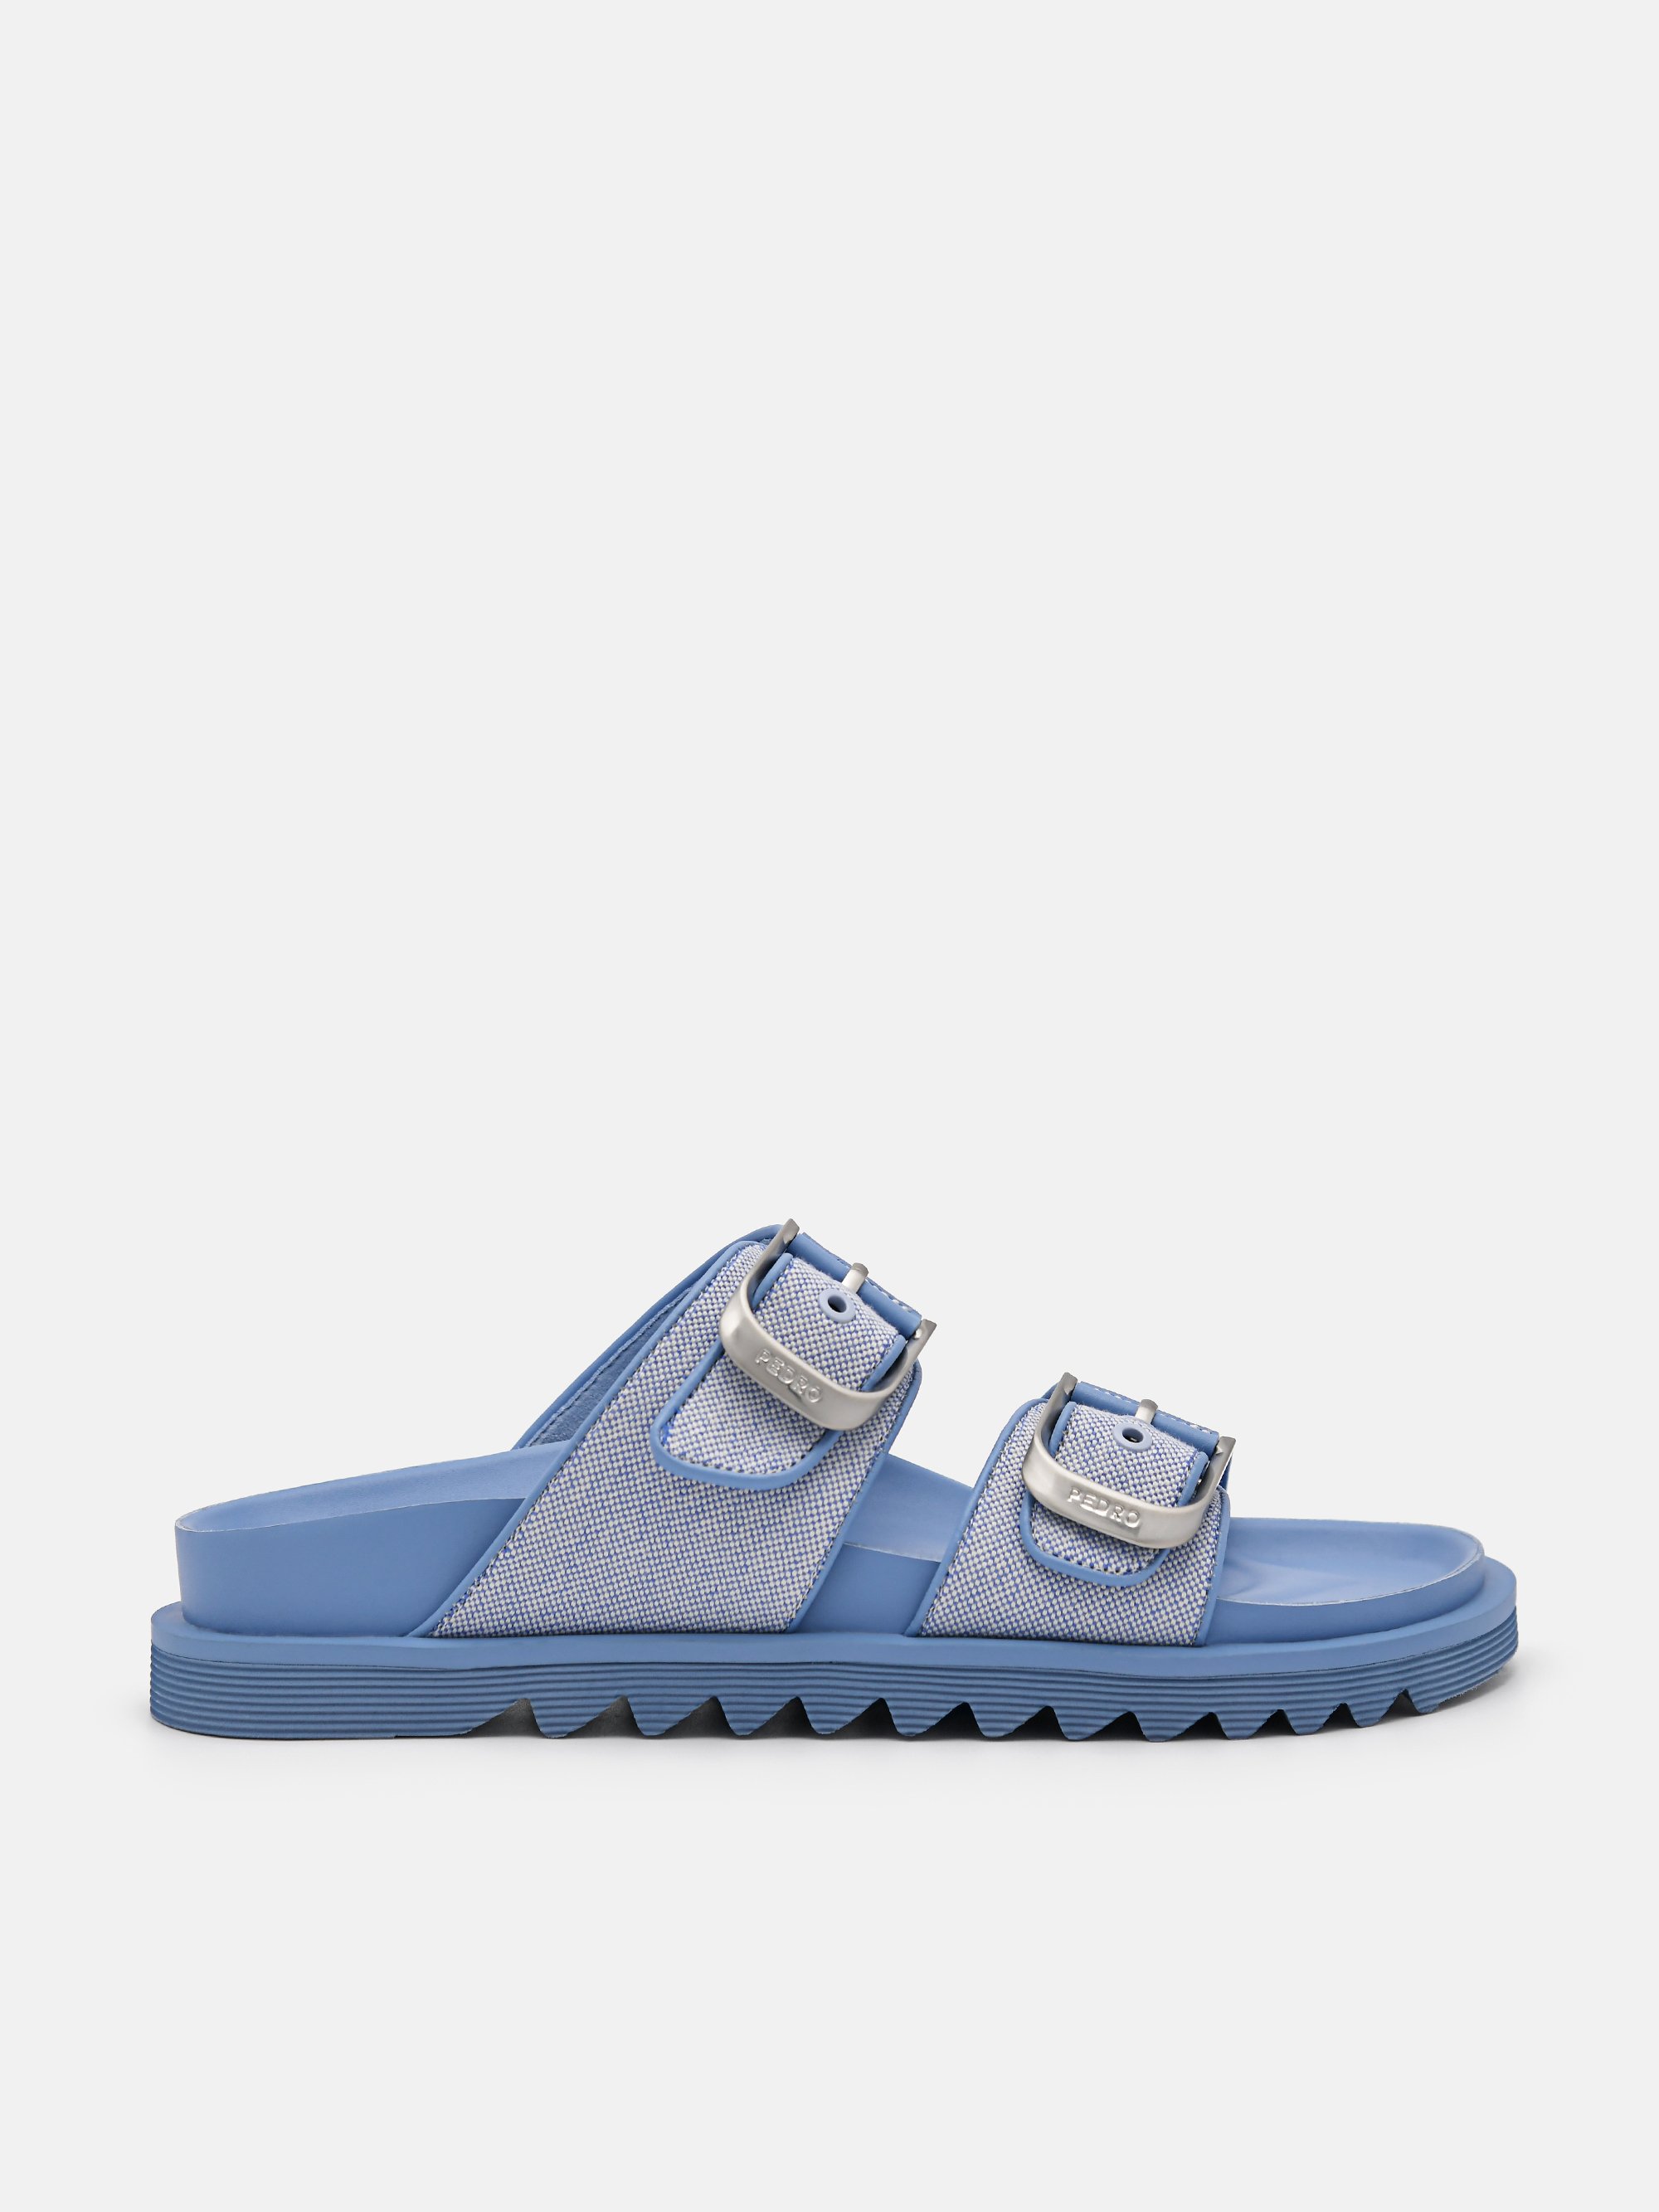 Blue Helix Sandals - PEDRO SG